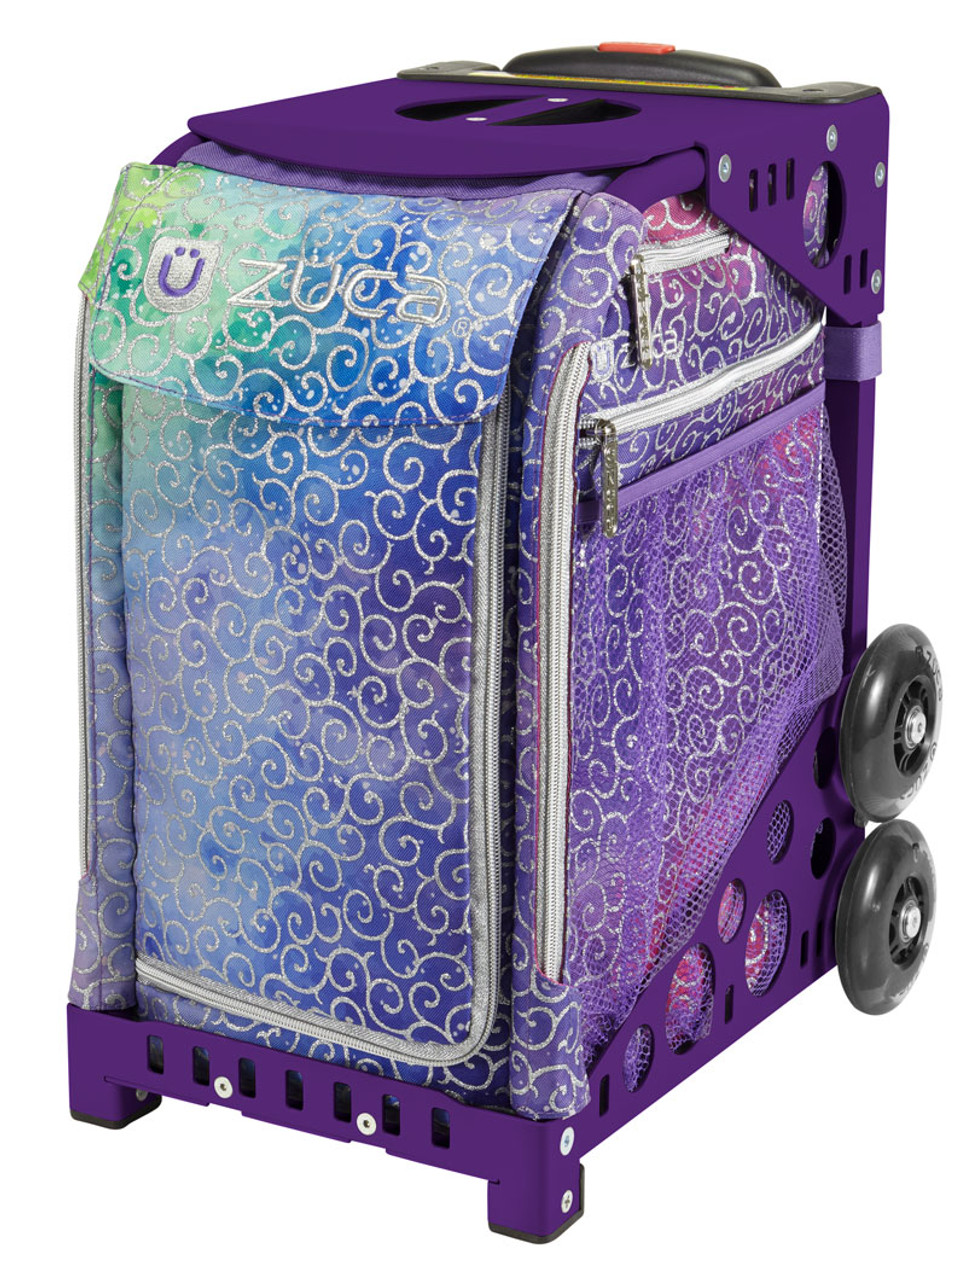 ZUCA Wheeled Bag - Sparkle'n Swirlz